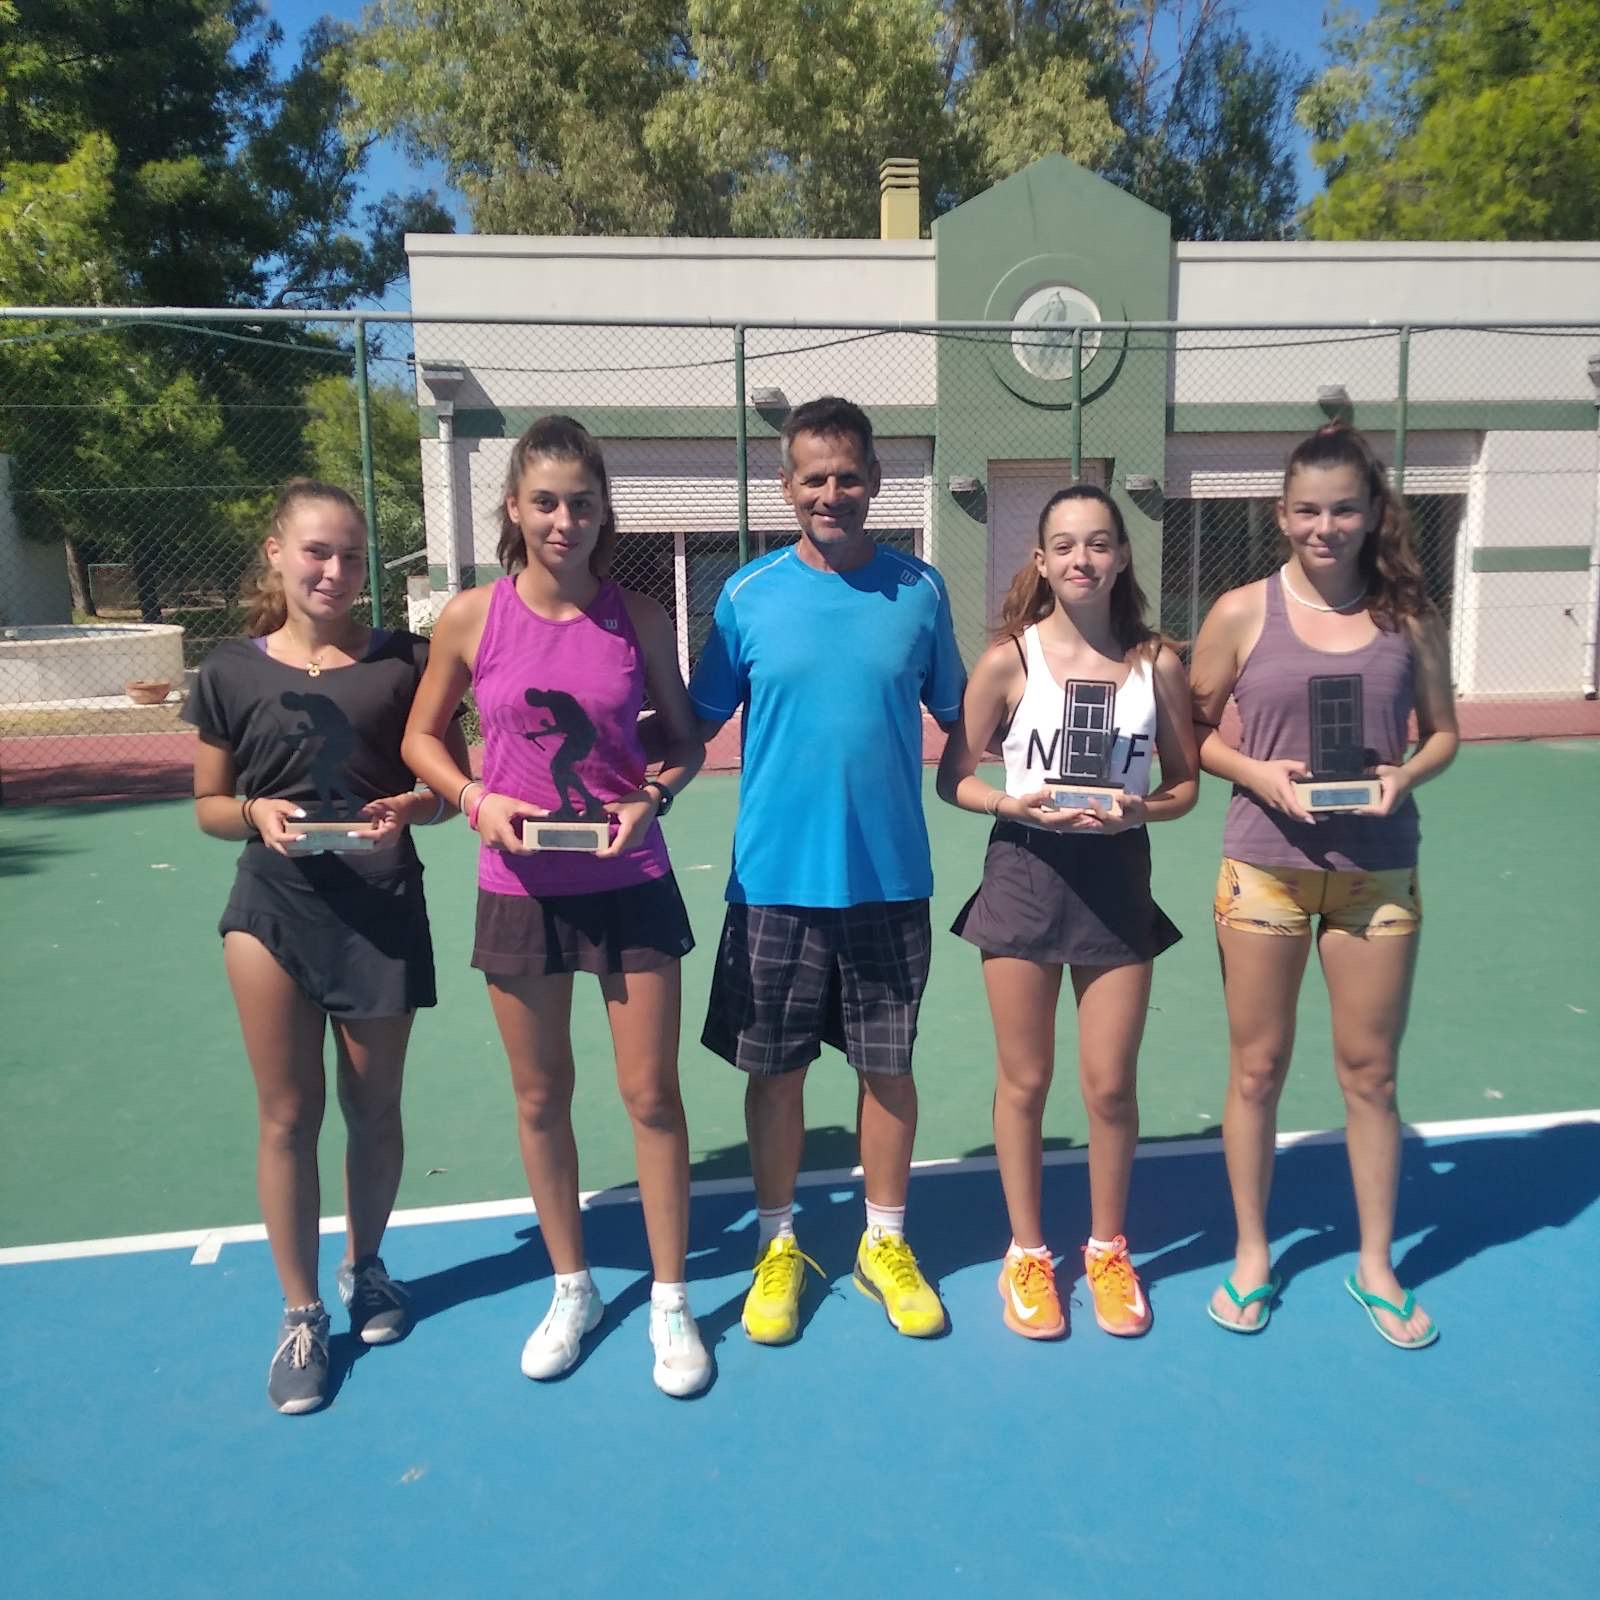 Εύβοια: Oλοκληρώθηκε το πρωτάθλημα Τένις στην Λιανή Άμμο- Η τελική κατάταξη